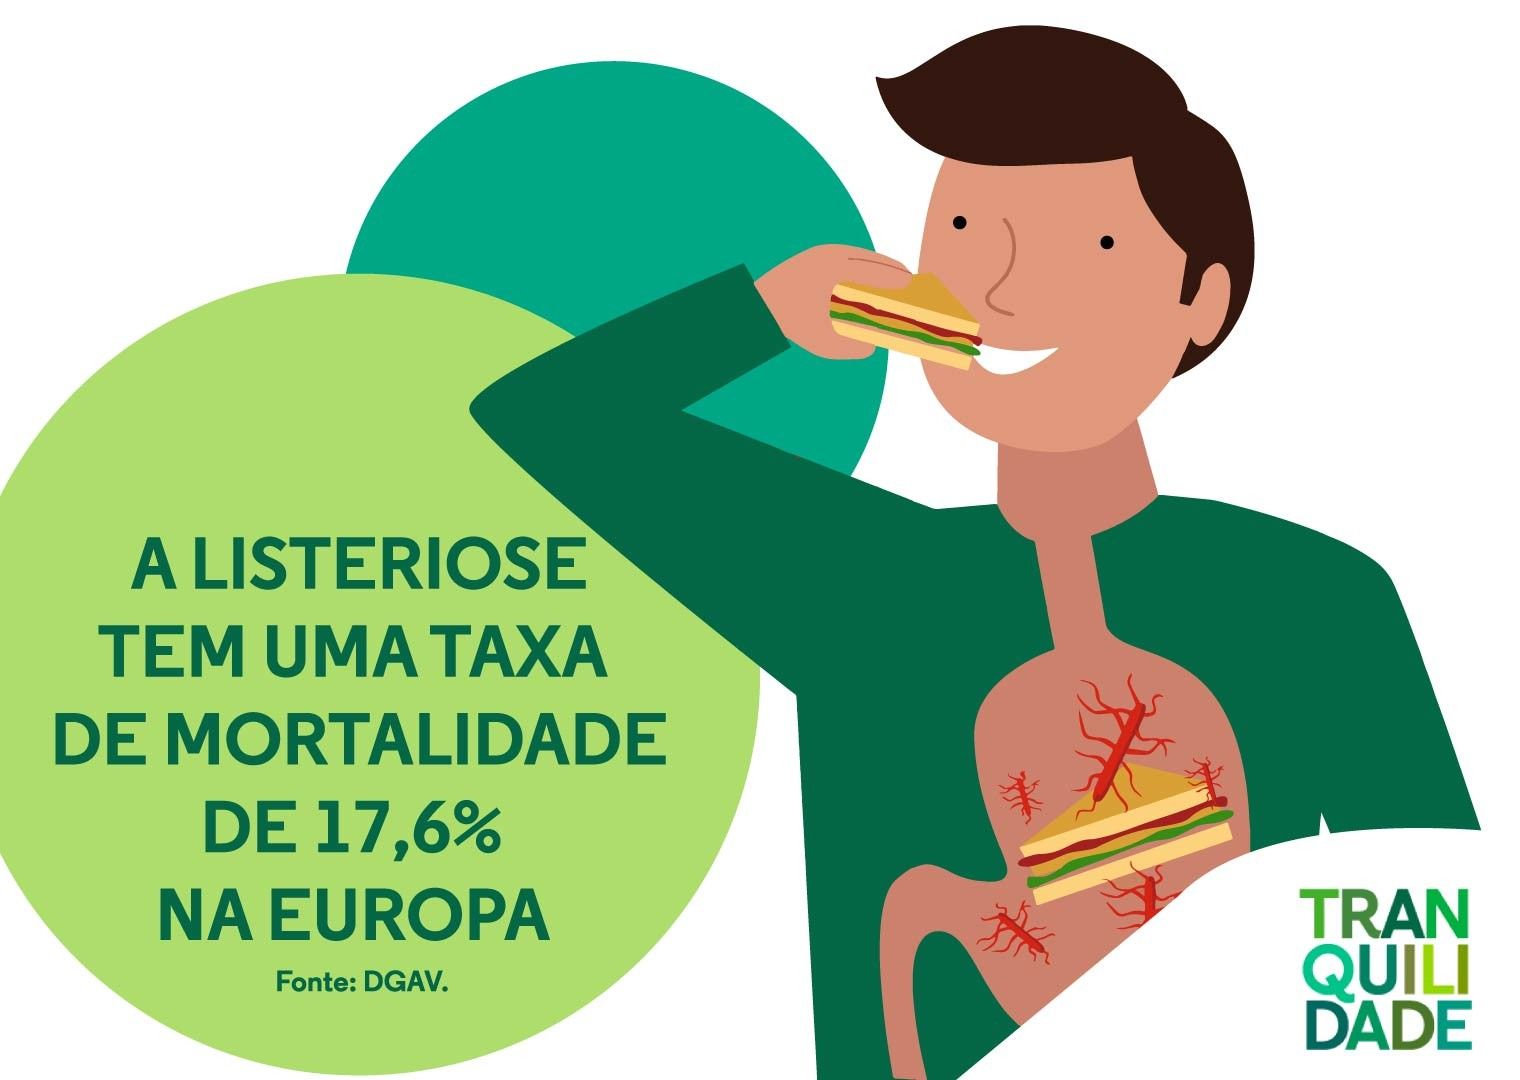 A listeriose tem uma taxa de mortalidade de 17,6% na Europa.